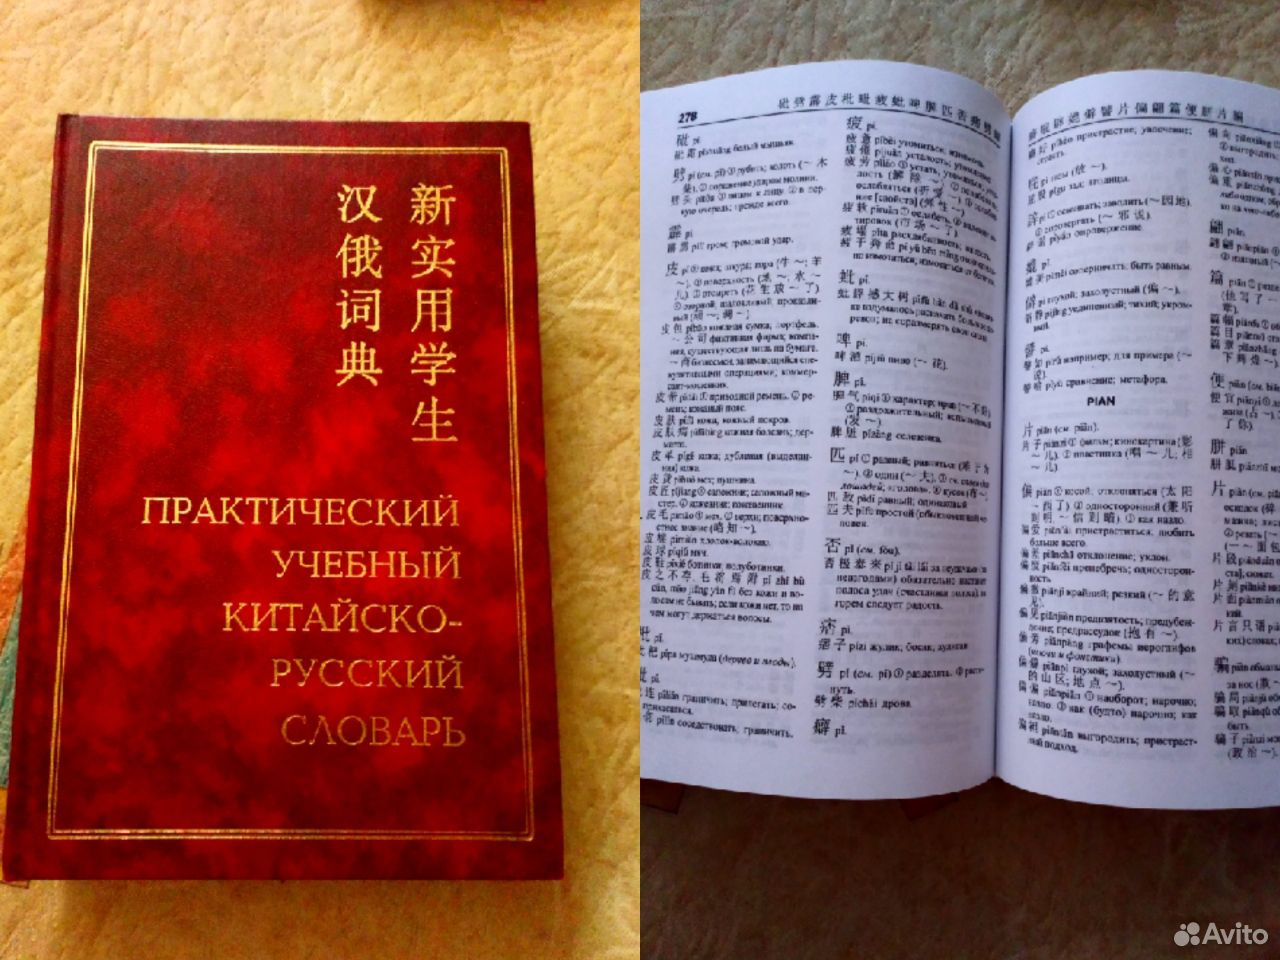 Перевод с китай на русский